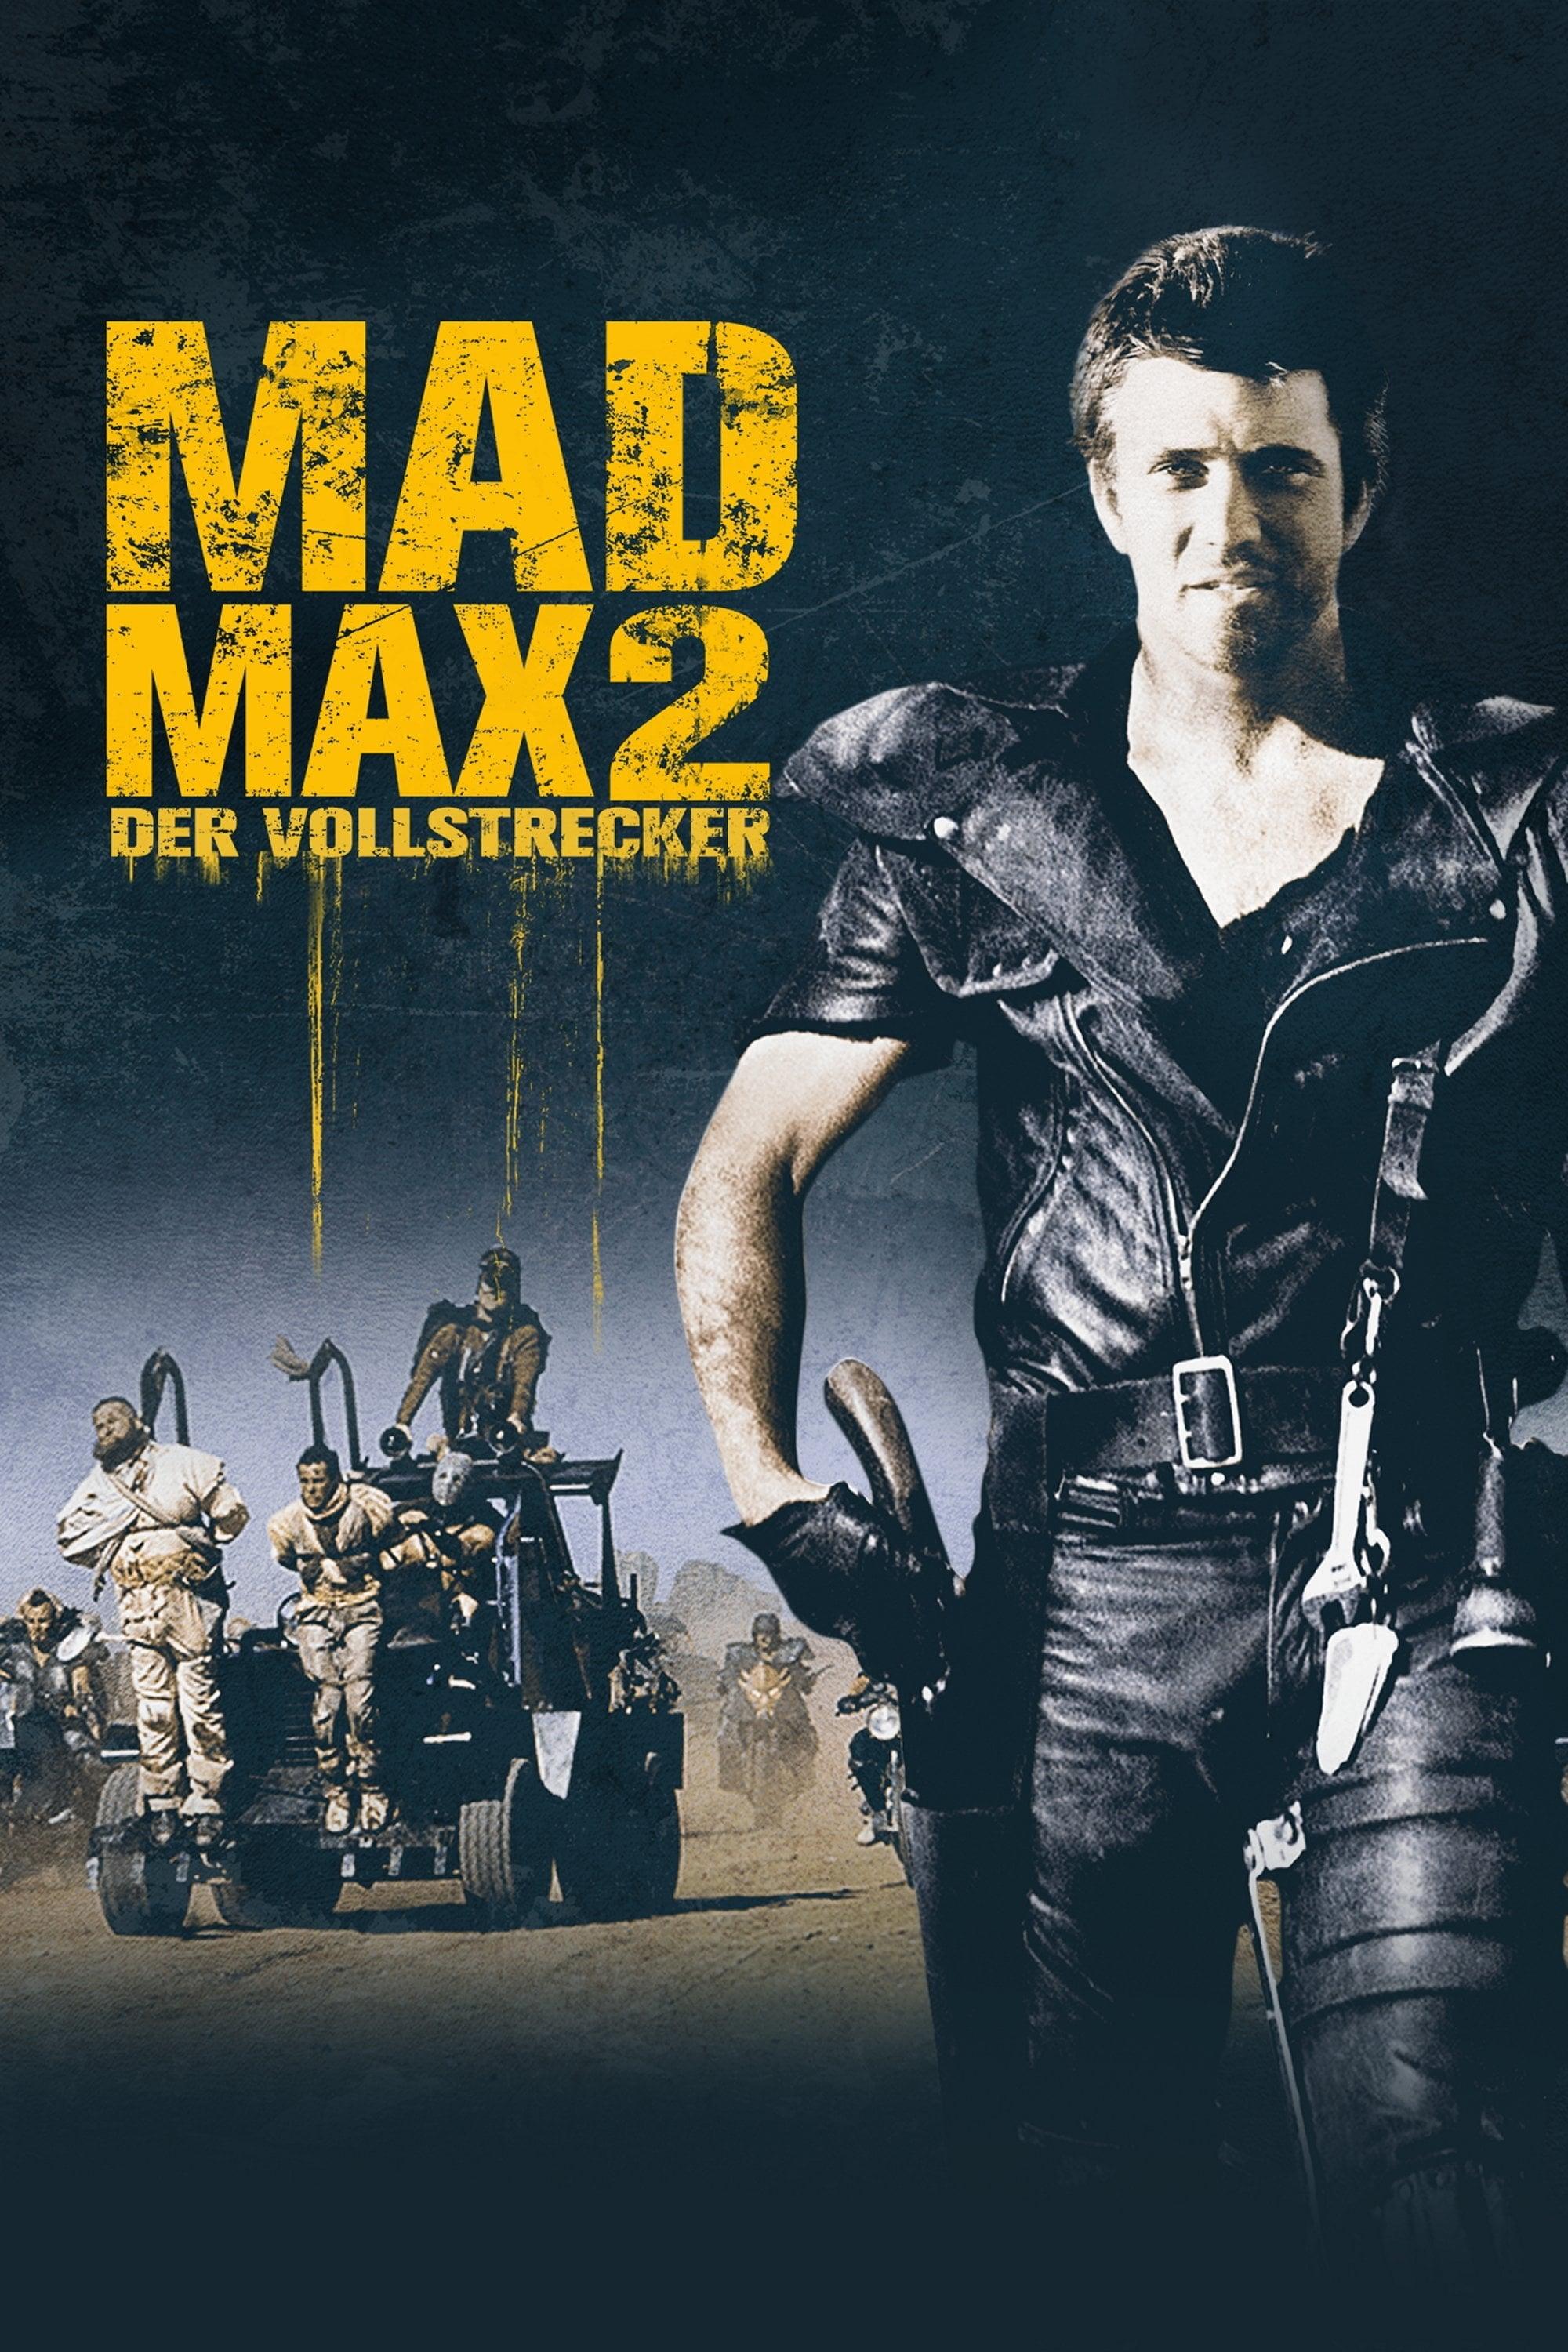 Mad Max II - Der Vollstrecker poster